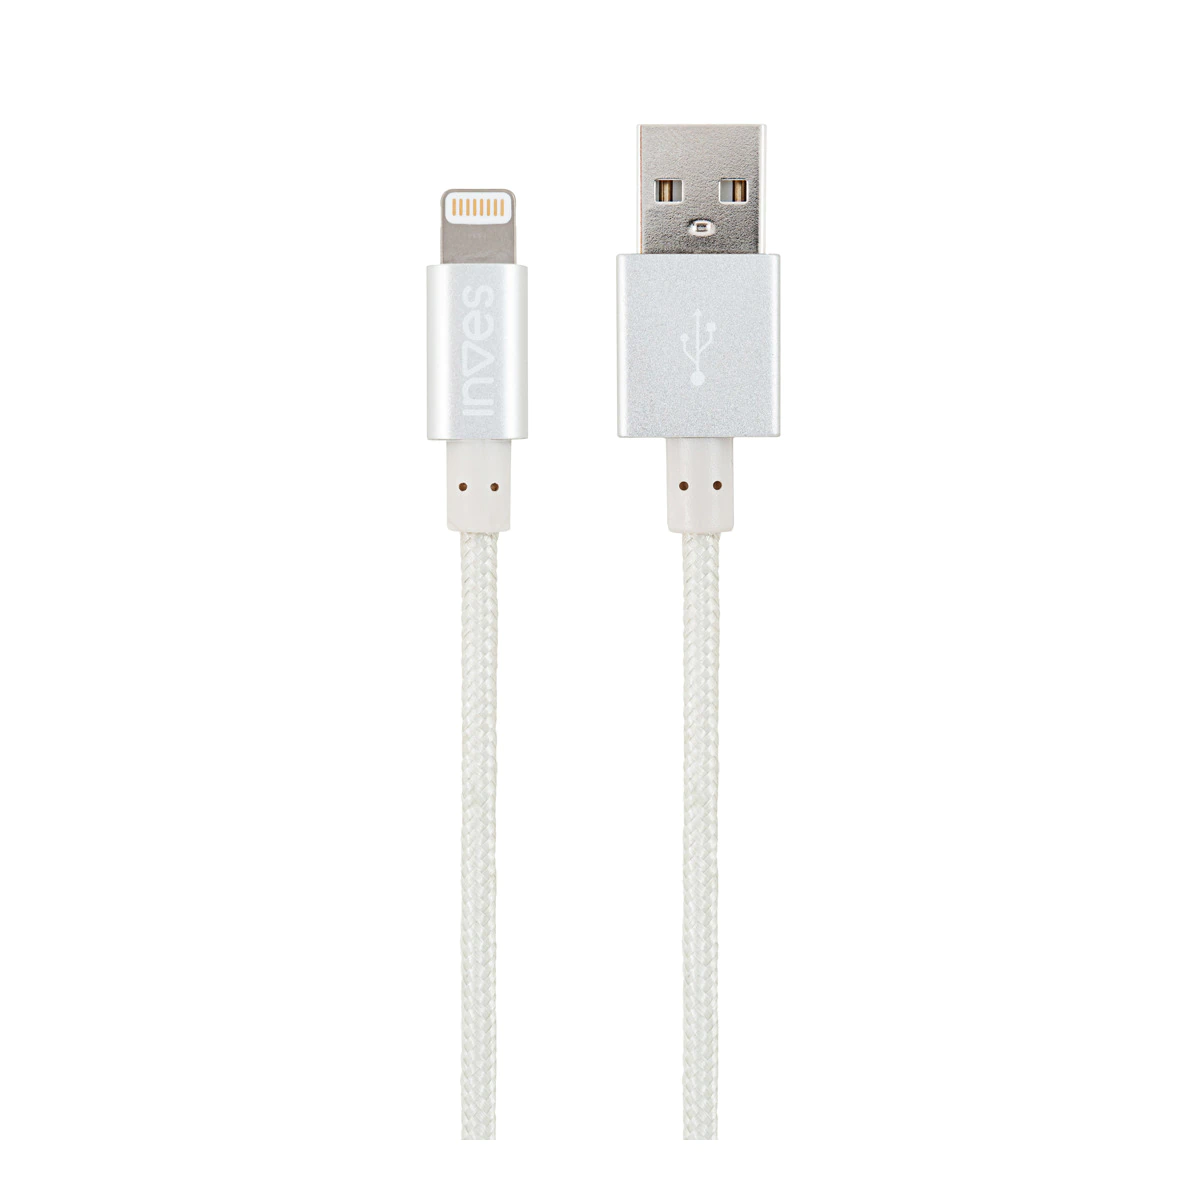 Cable Inves B1 Silver de conector lightning a USB de 1 metro